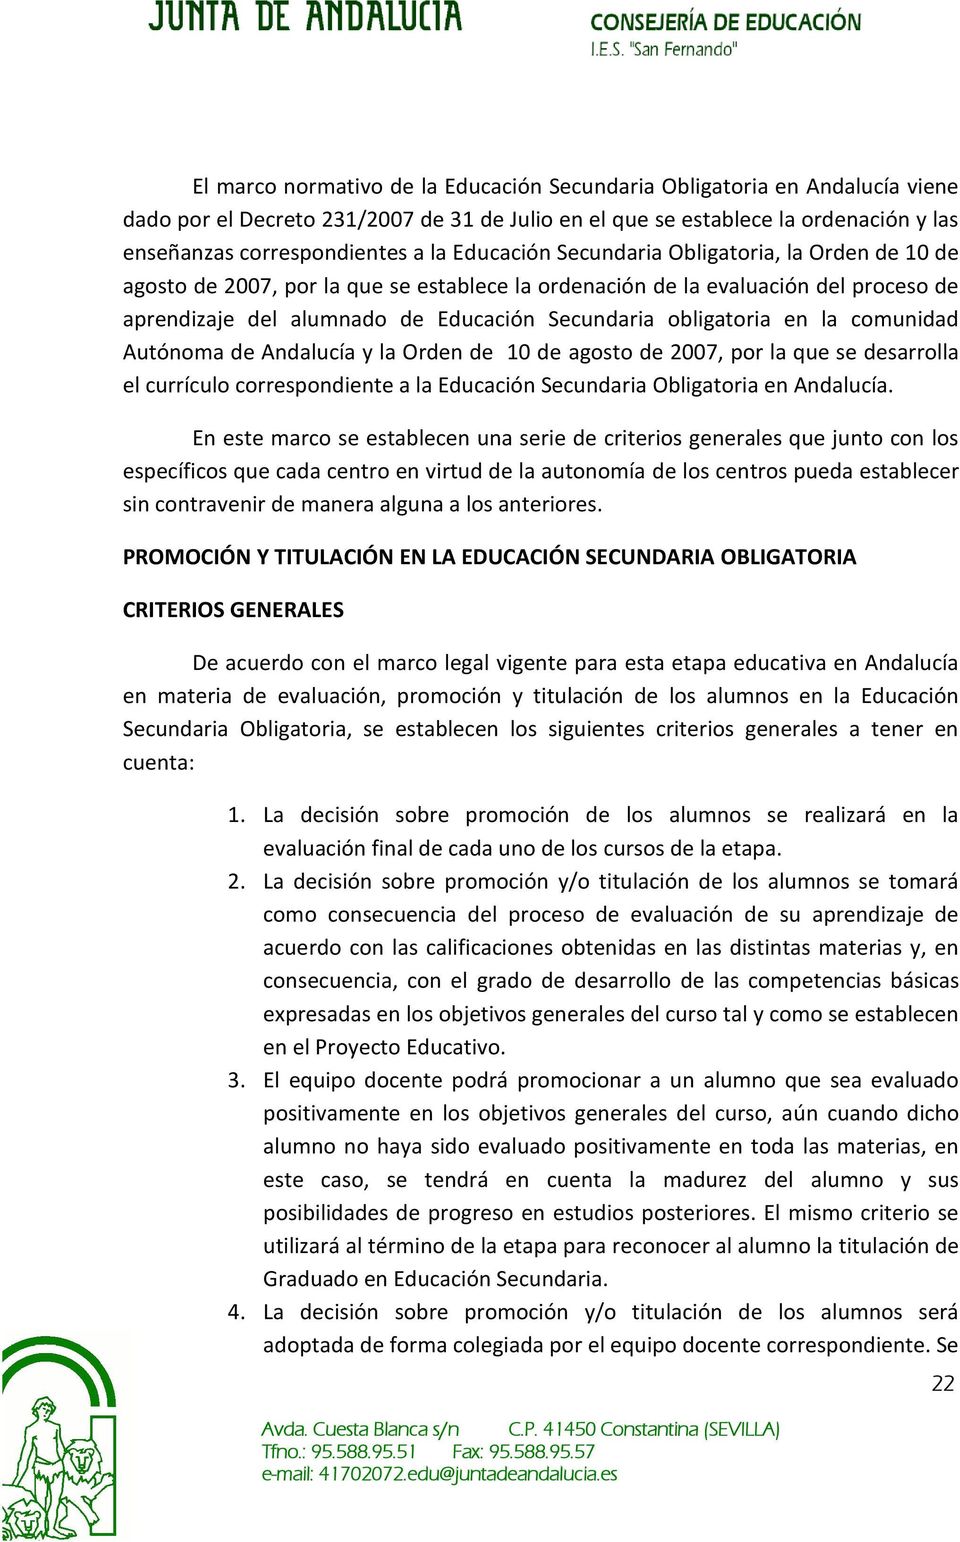 en la comunidad Autónoma de Andalucía y la Orden de 10 de agosto de 2007, por la que se desarrolla el currículo correspondiente a la Educación Secundaria Obligatoria en Andalucía.